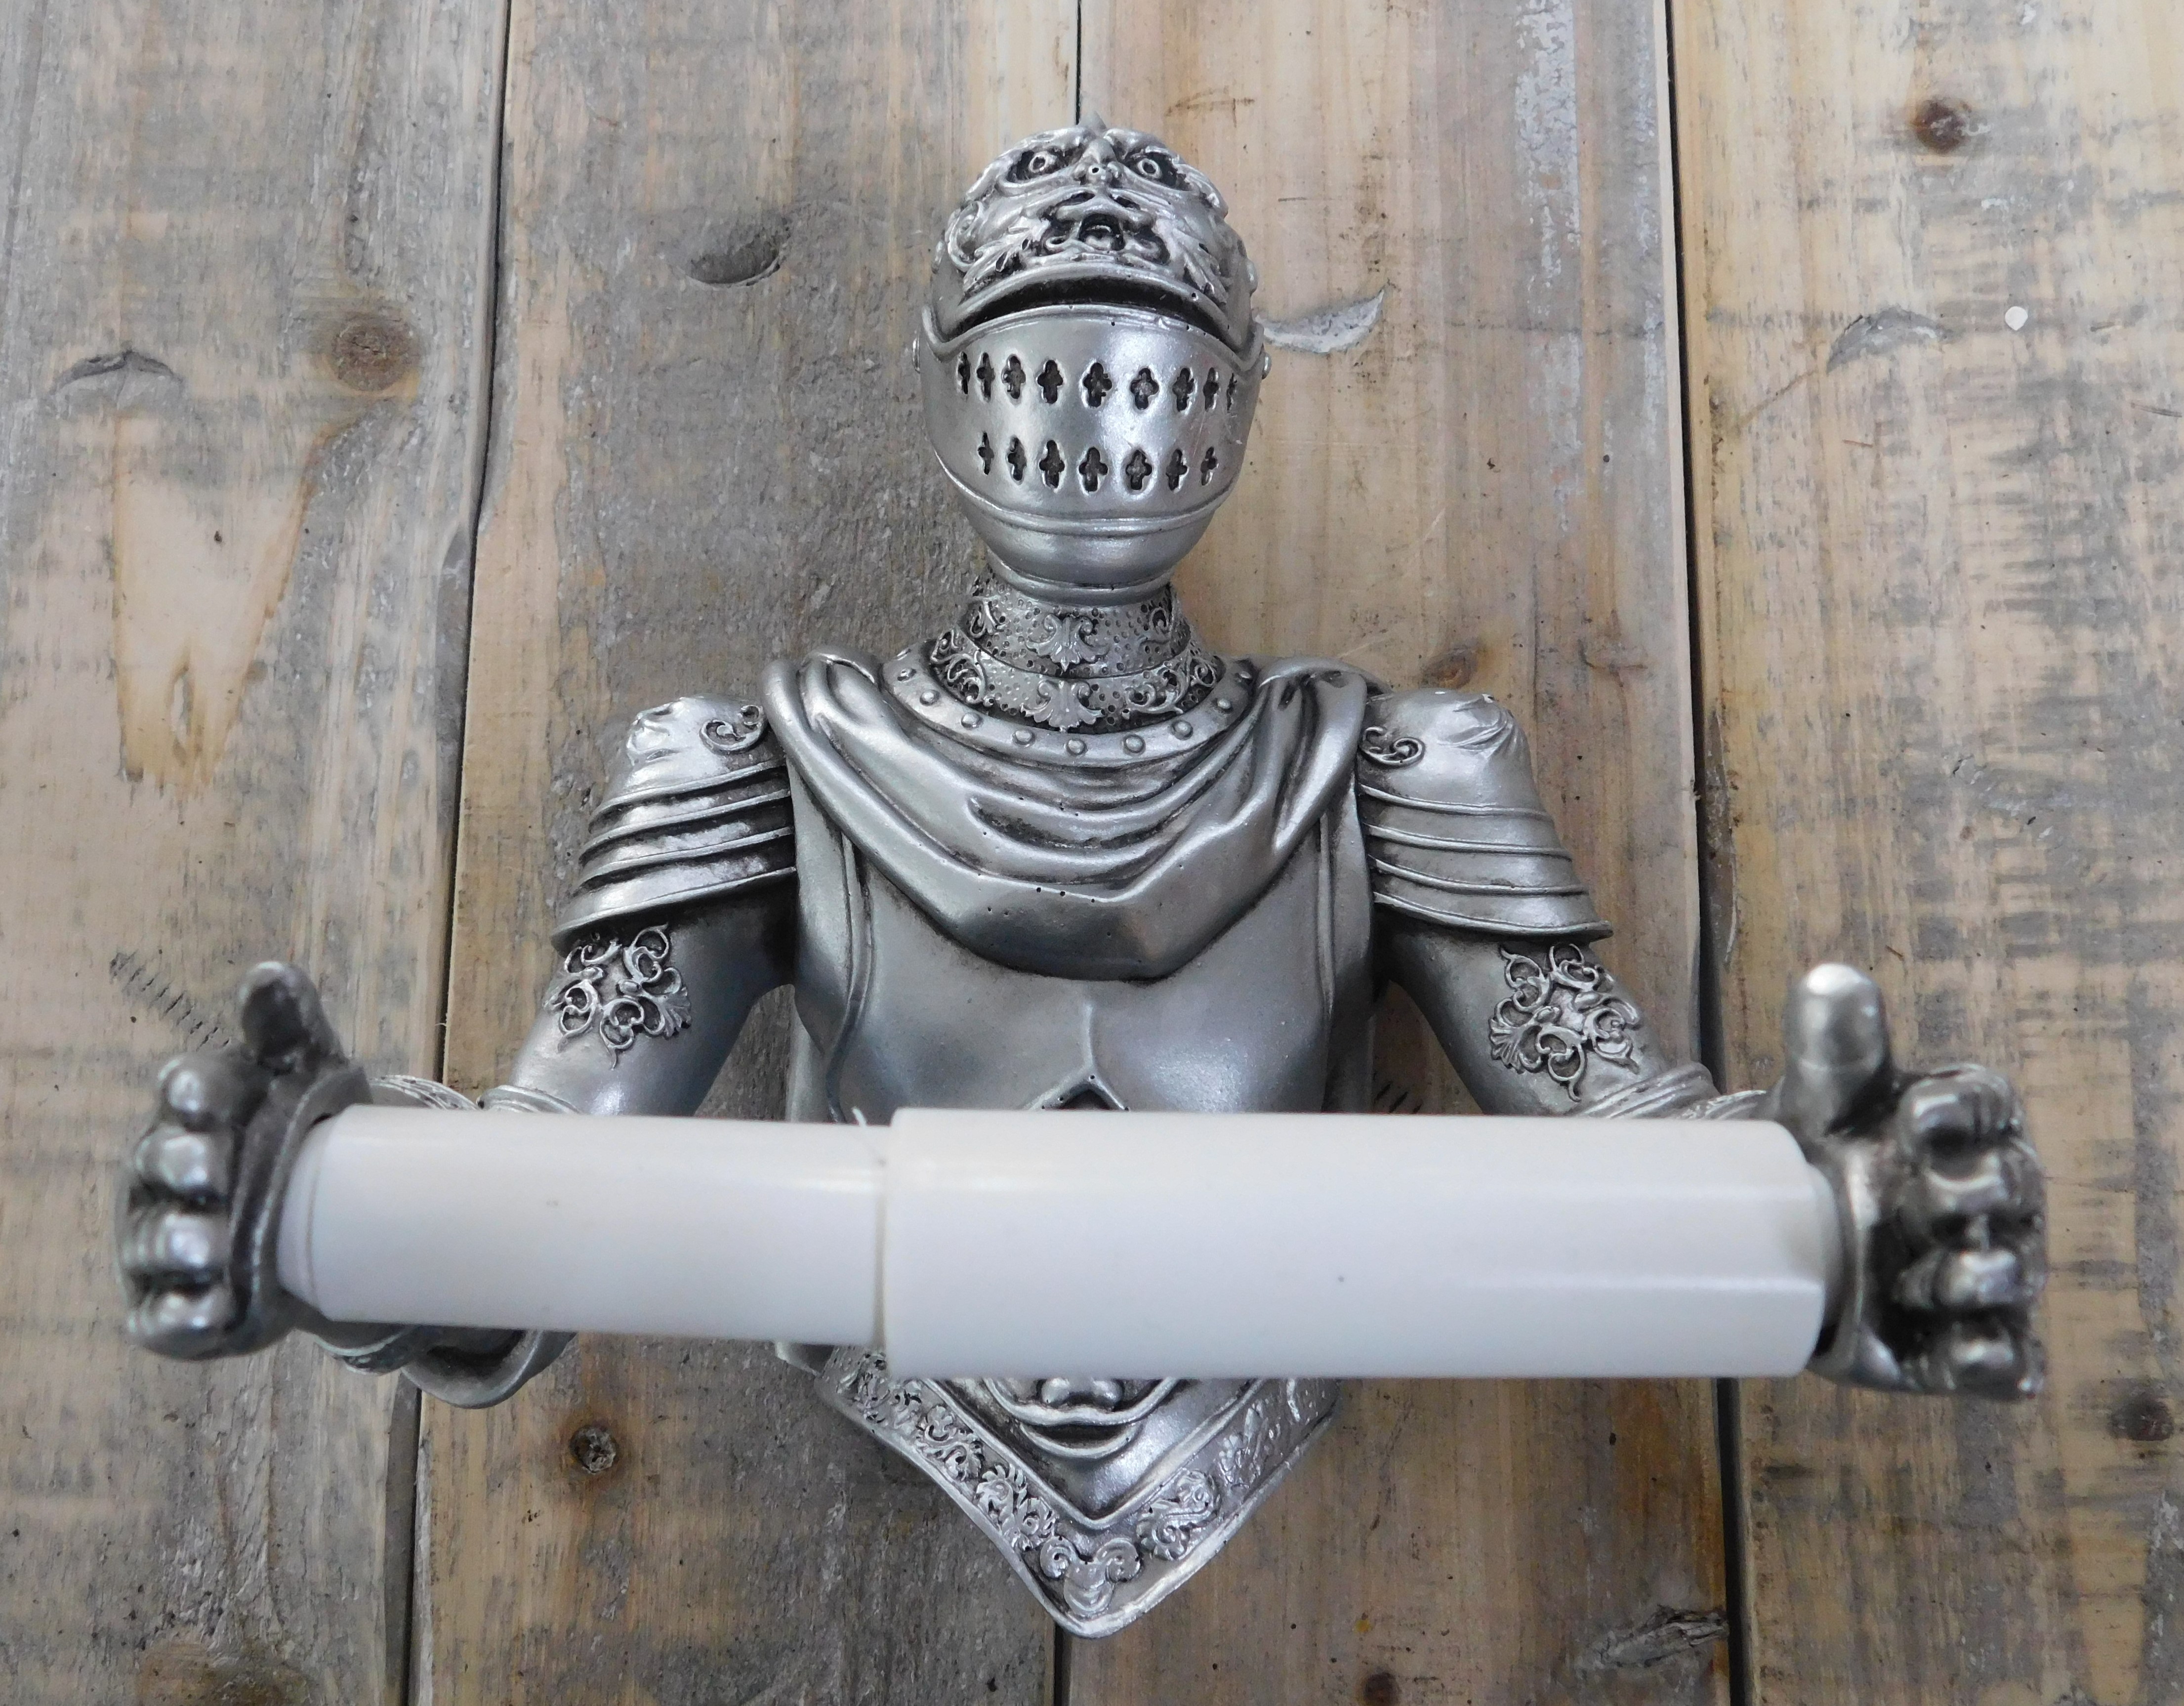 Ein Toilettenpapierhalter in Form eines Ritters, eine schöne Dekoration!